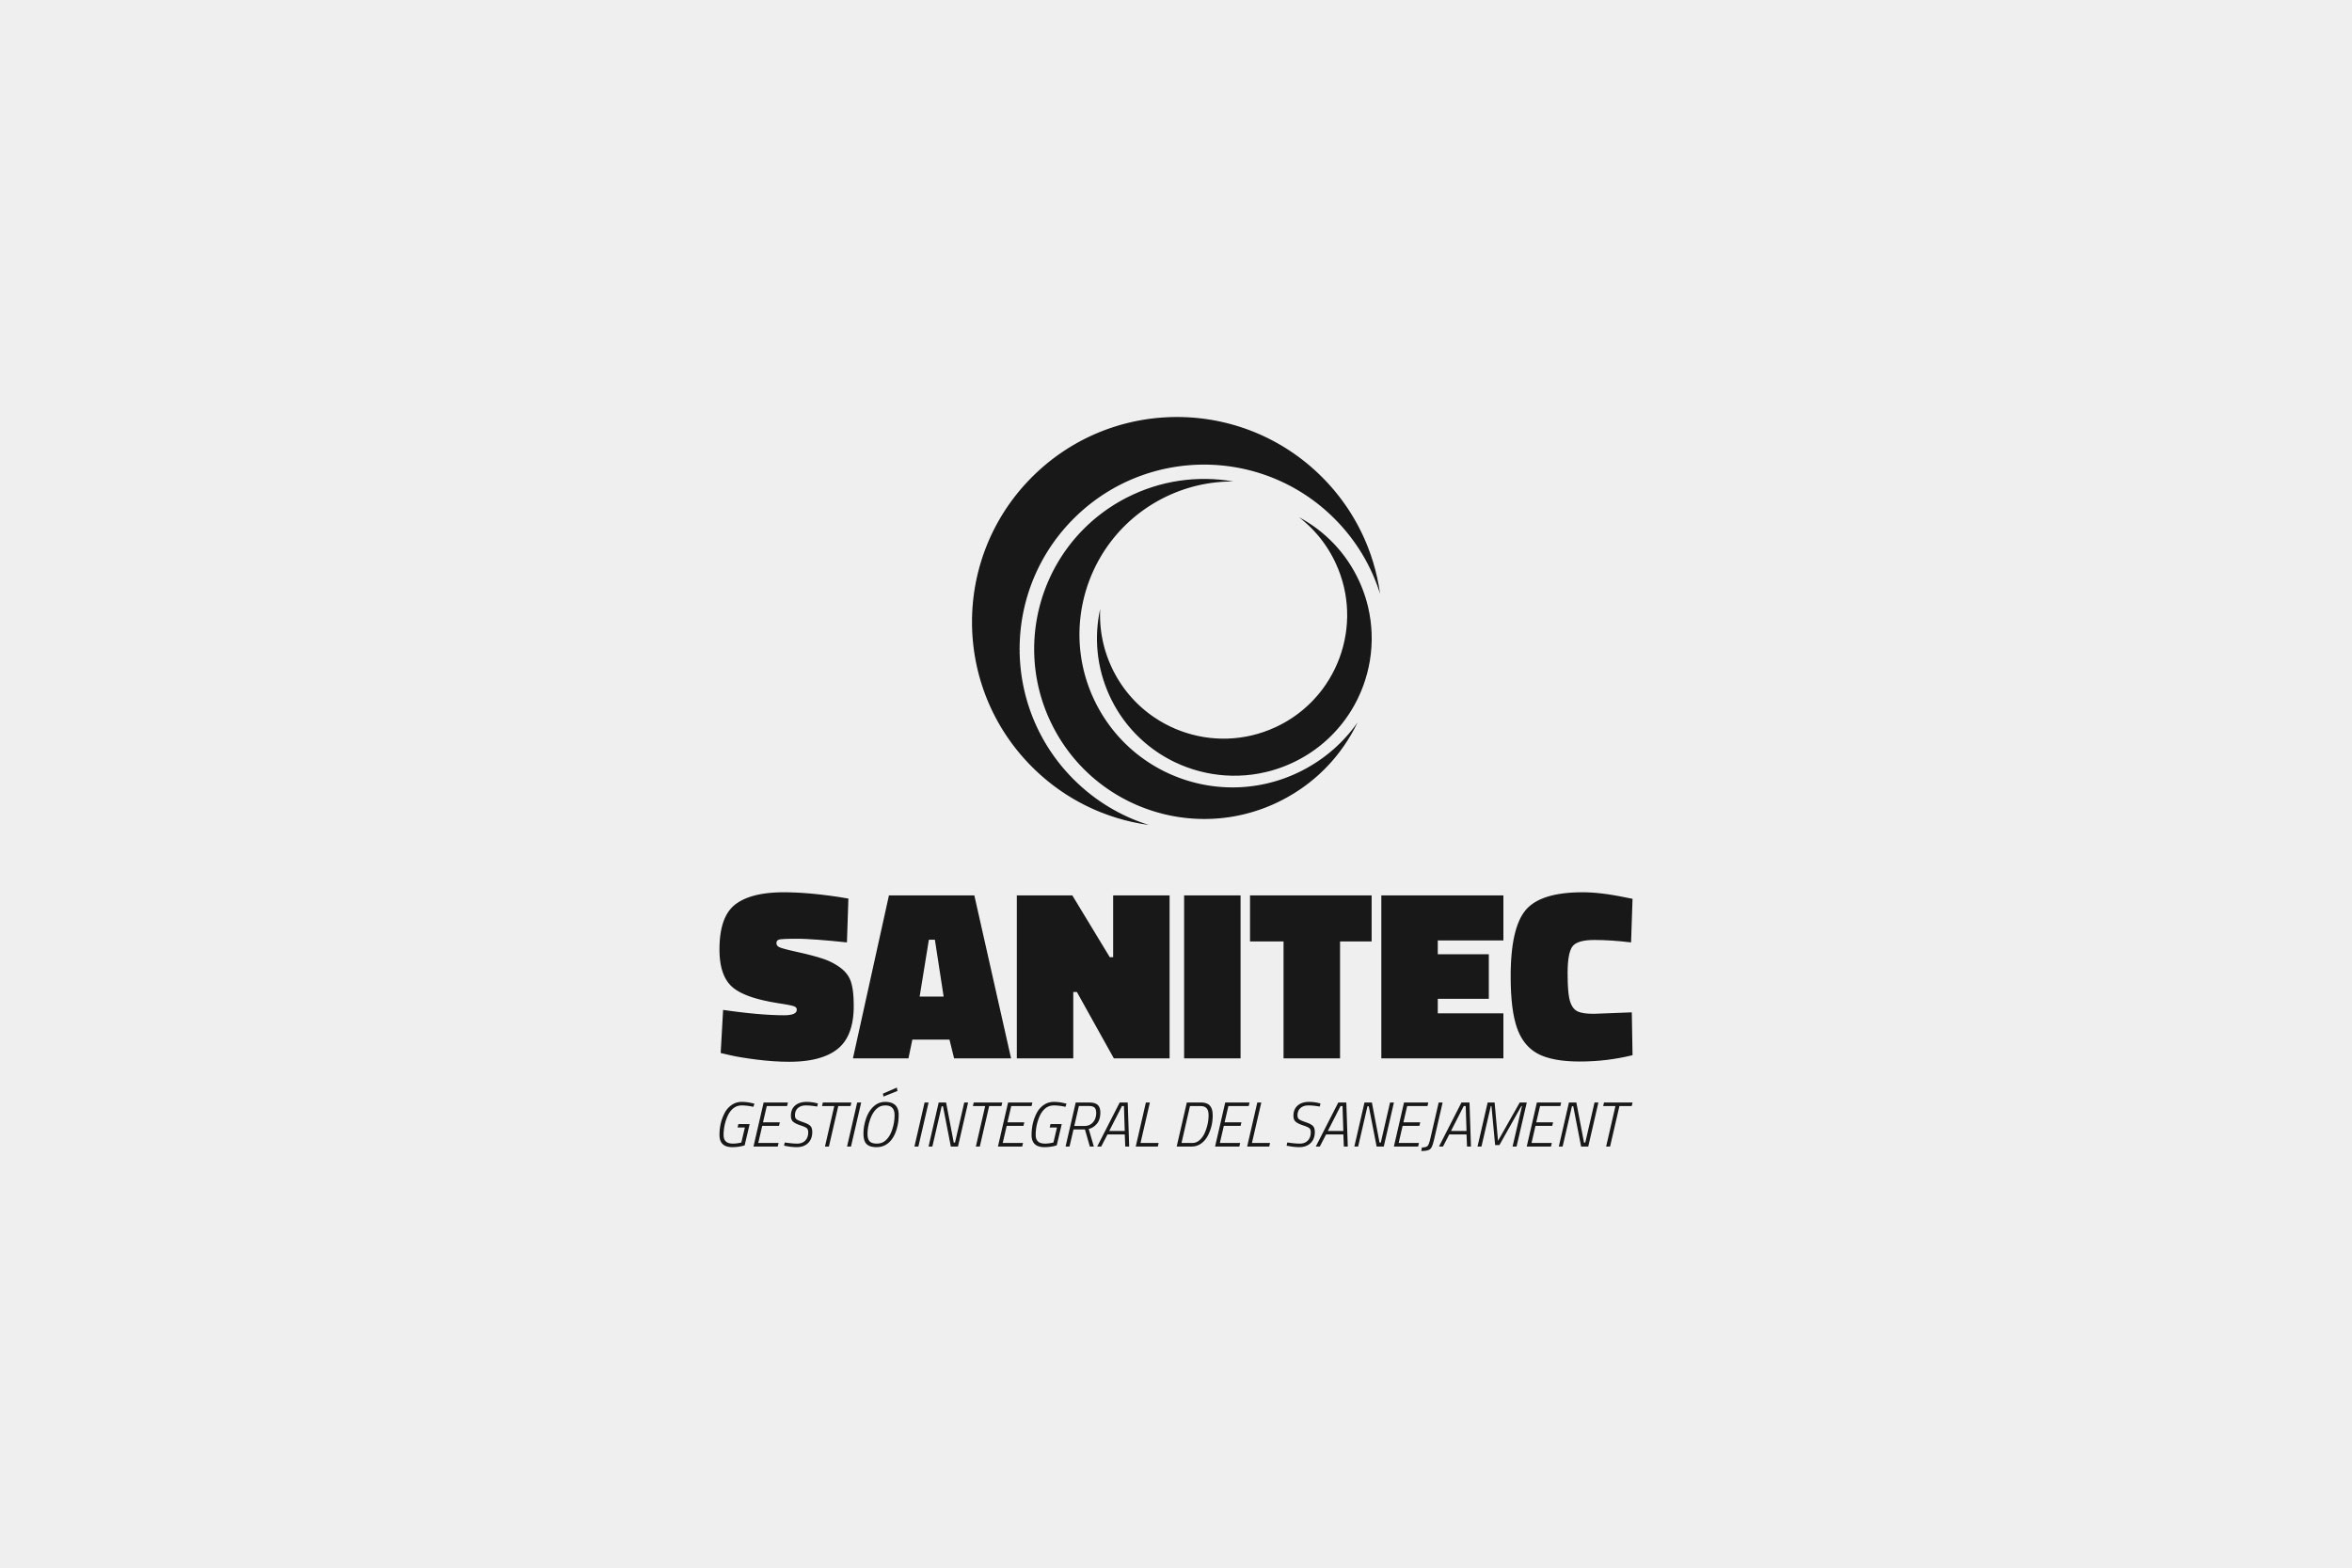 Porta-Disseny-Logos-Sanitec-Gestio-Integral-del-Sanejament-02